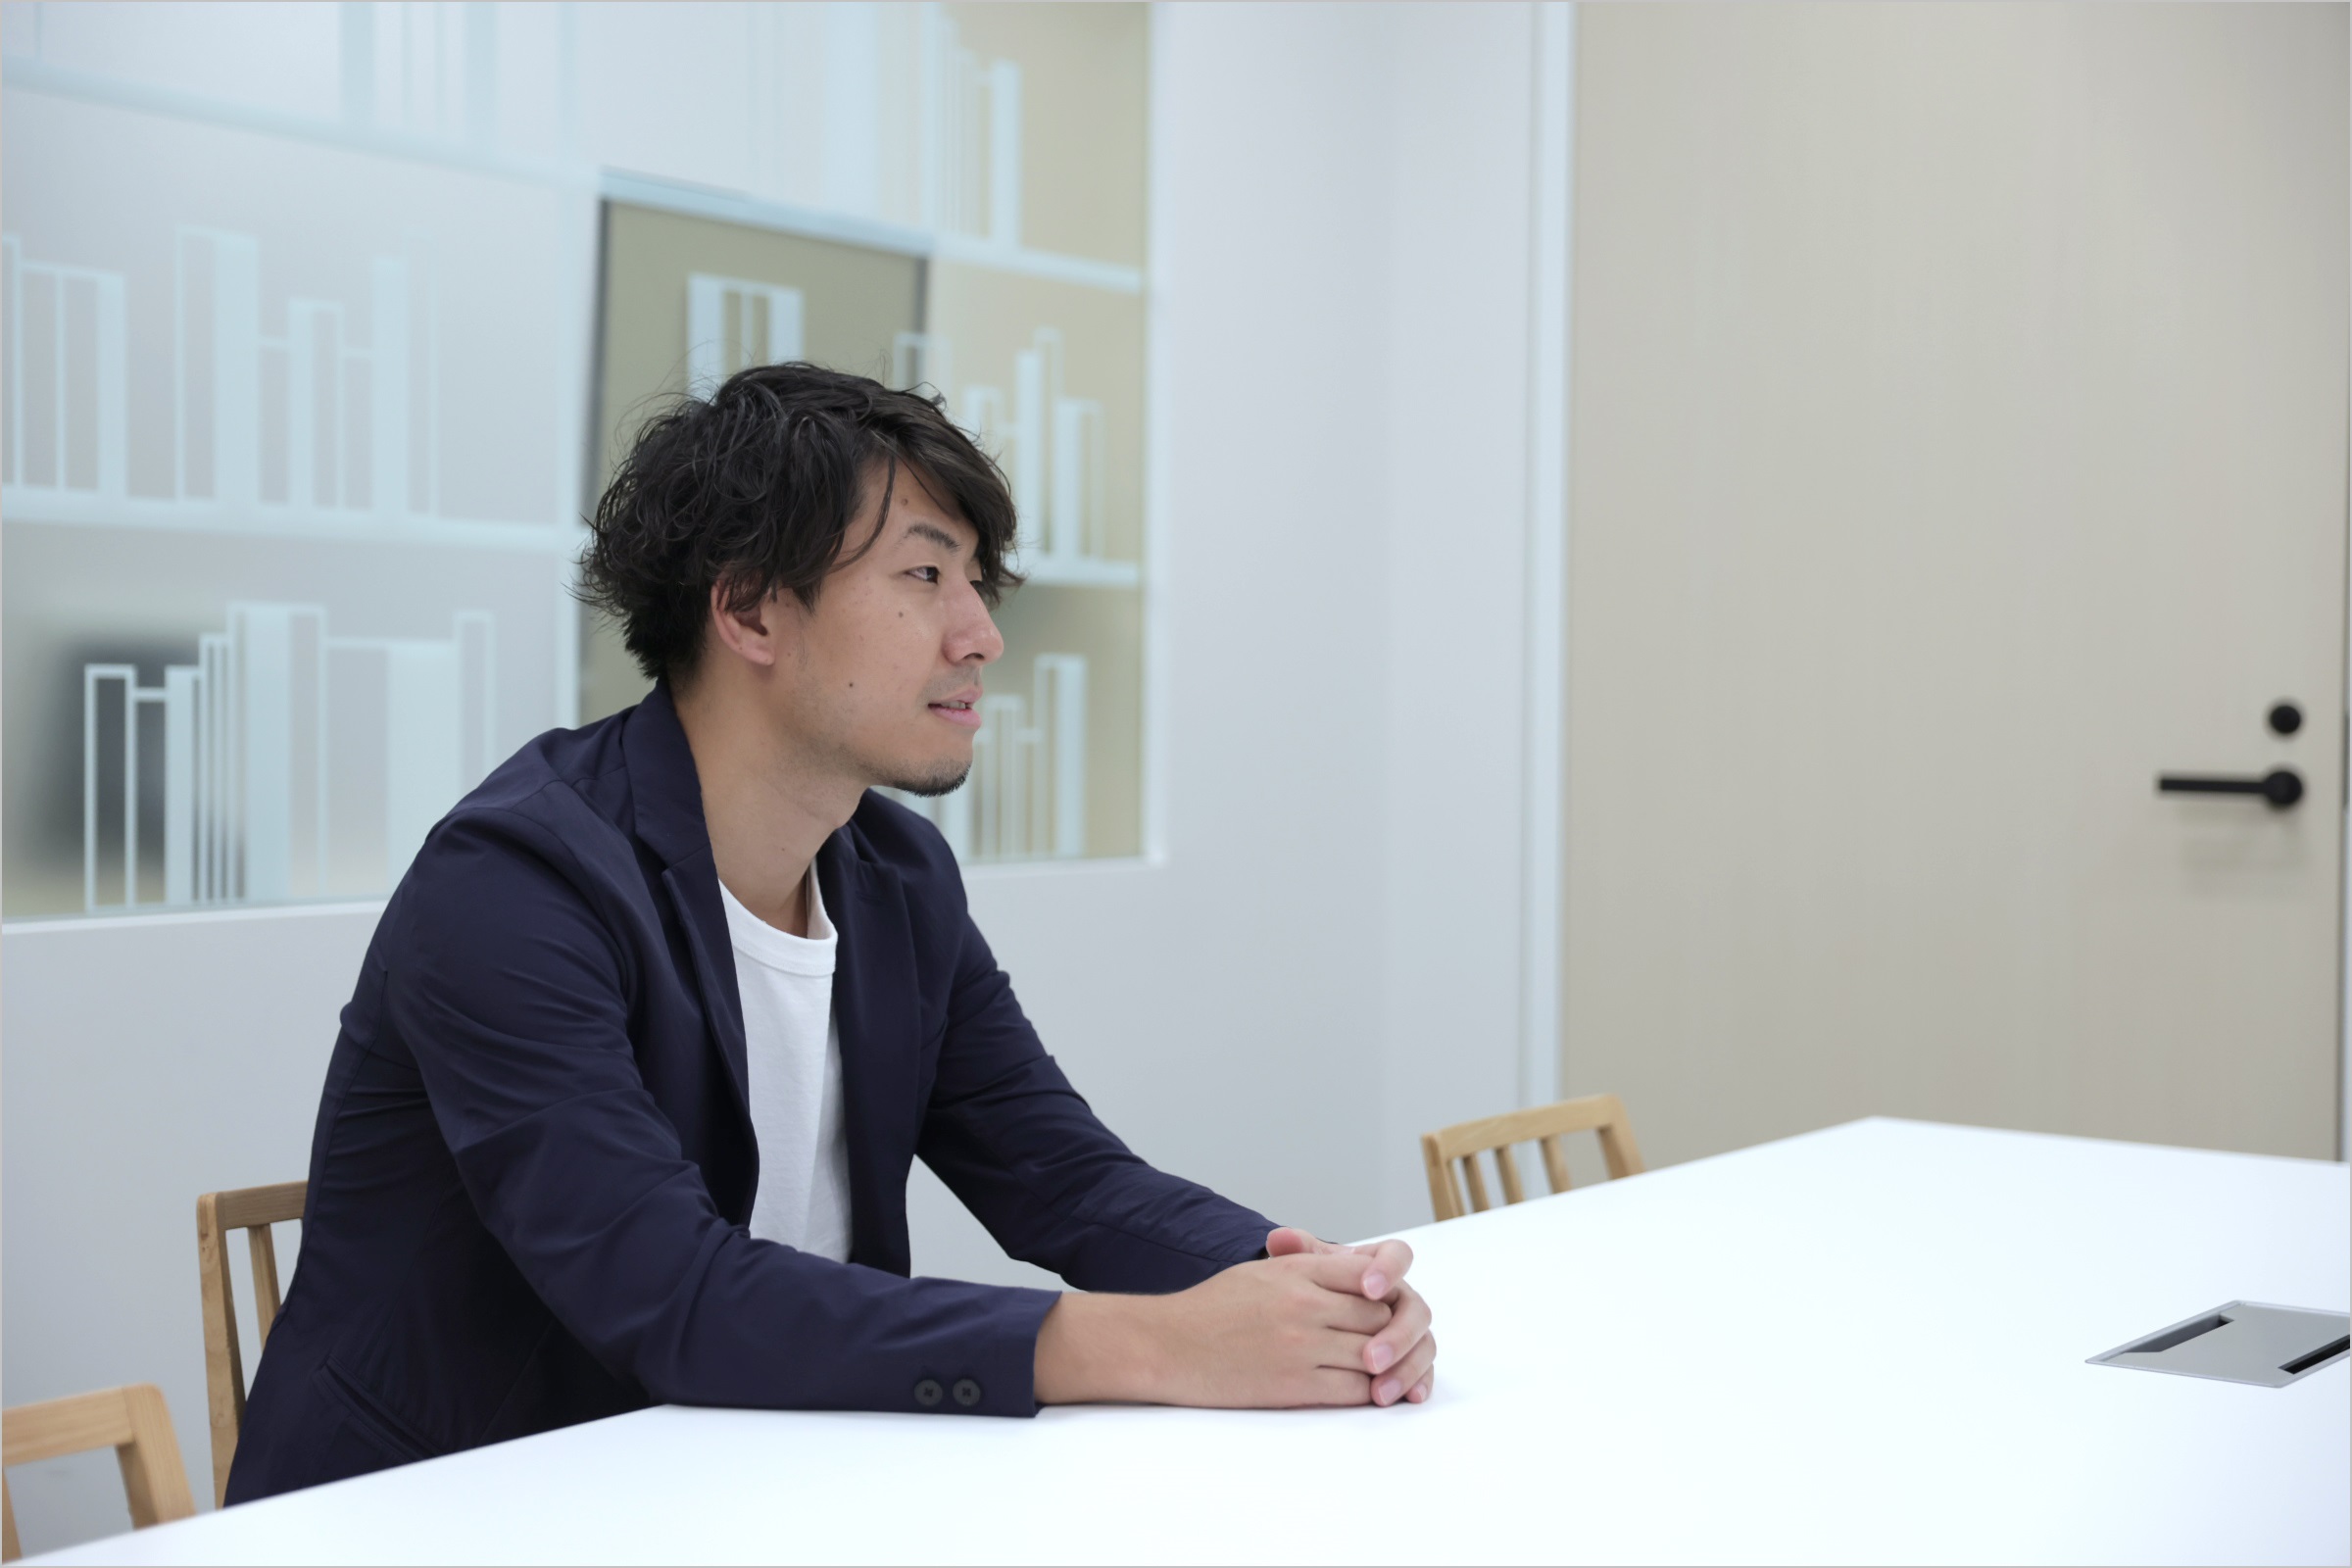 菅原が椅子に座りながら、会社の制度についてインタビューに答えている様子の写真